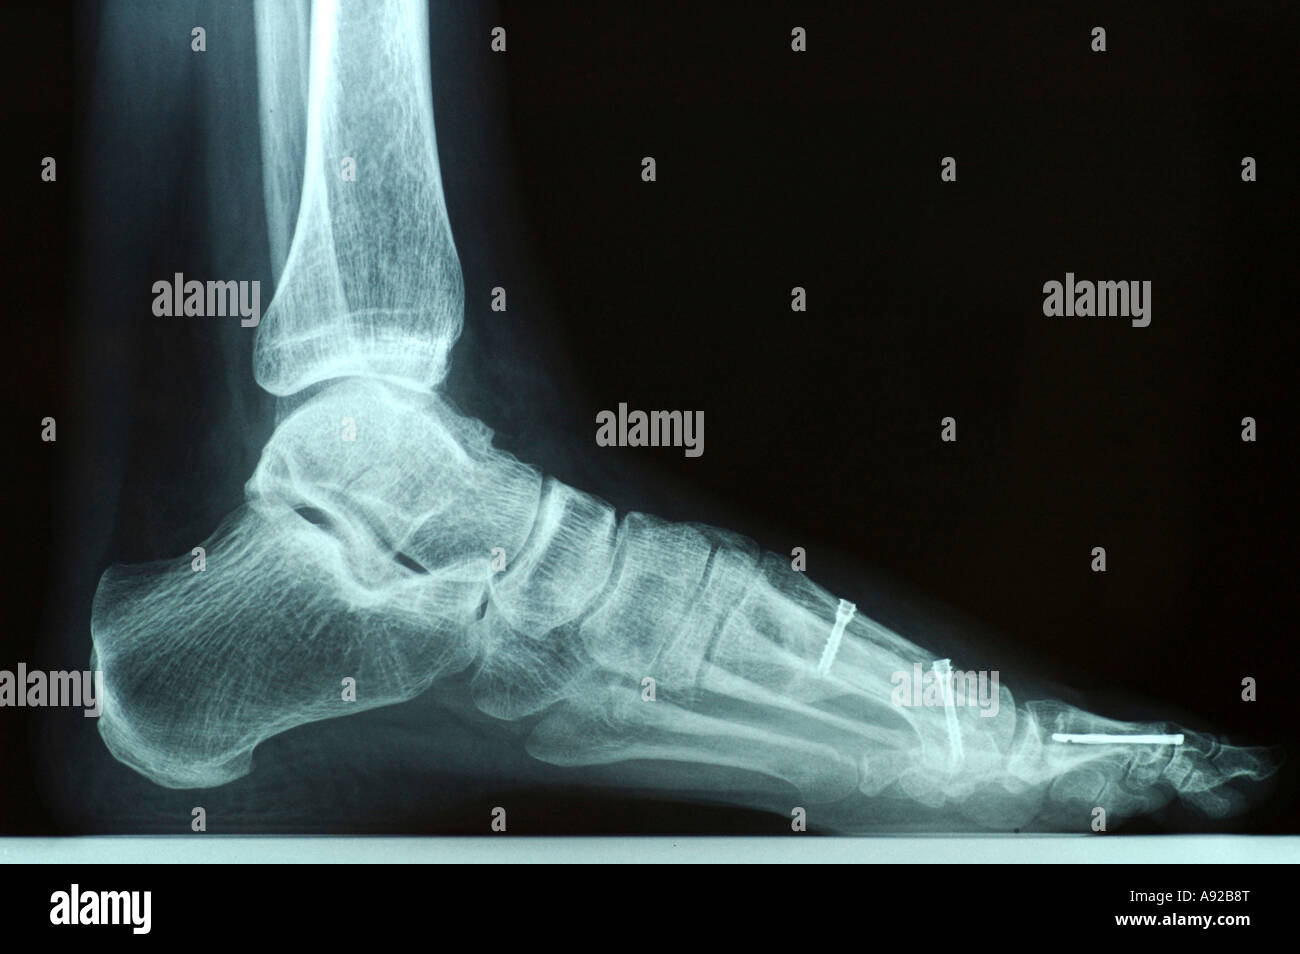 Fußchirurgie Schraube Röntgen Knochen Stockfotos und -bilder Kaufen - Alamy